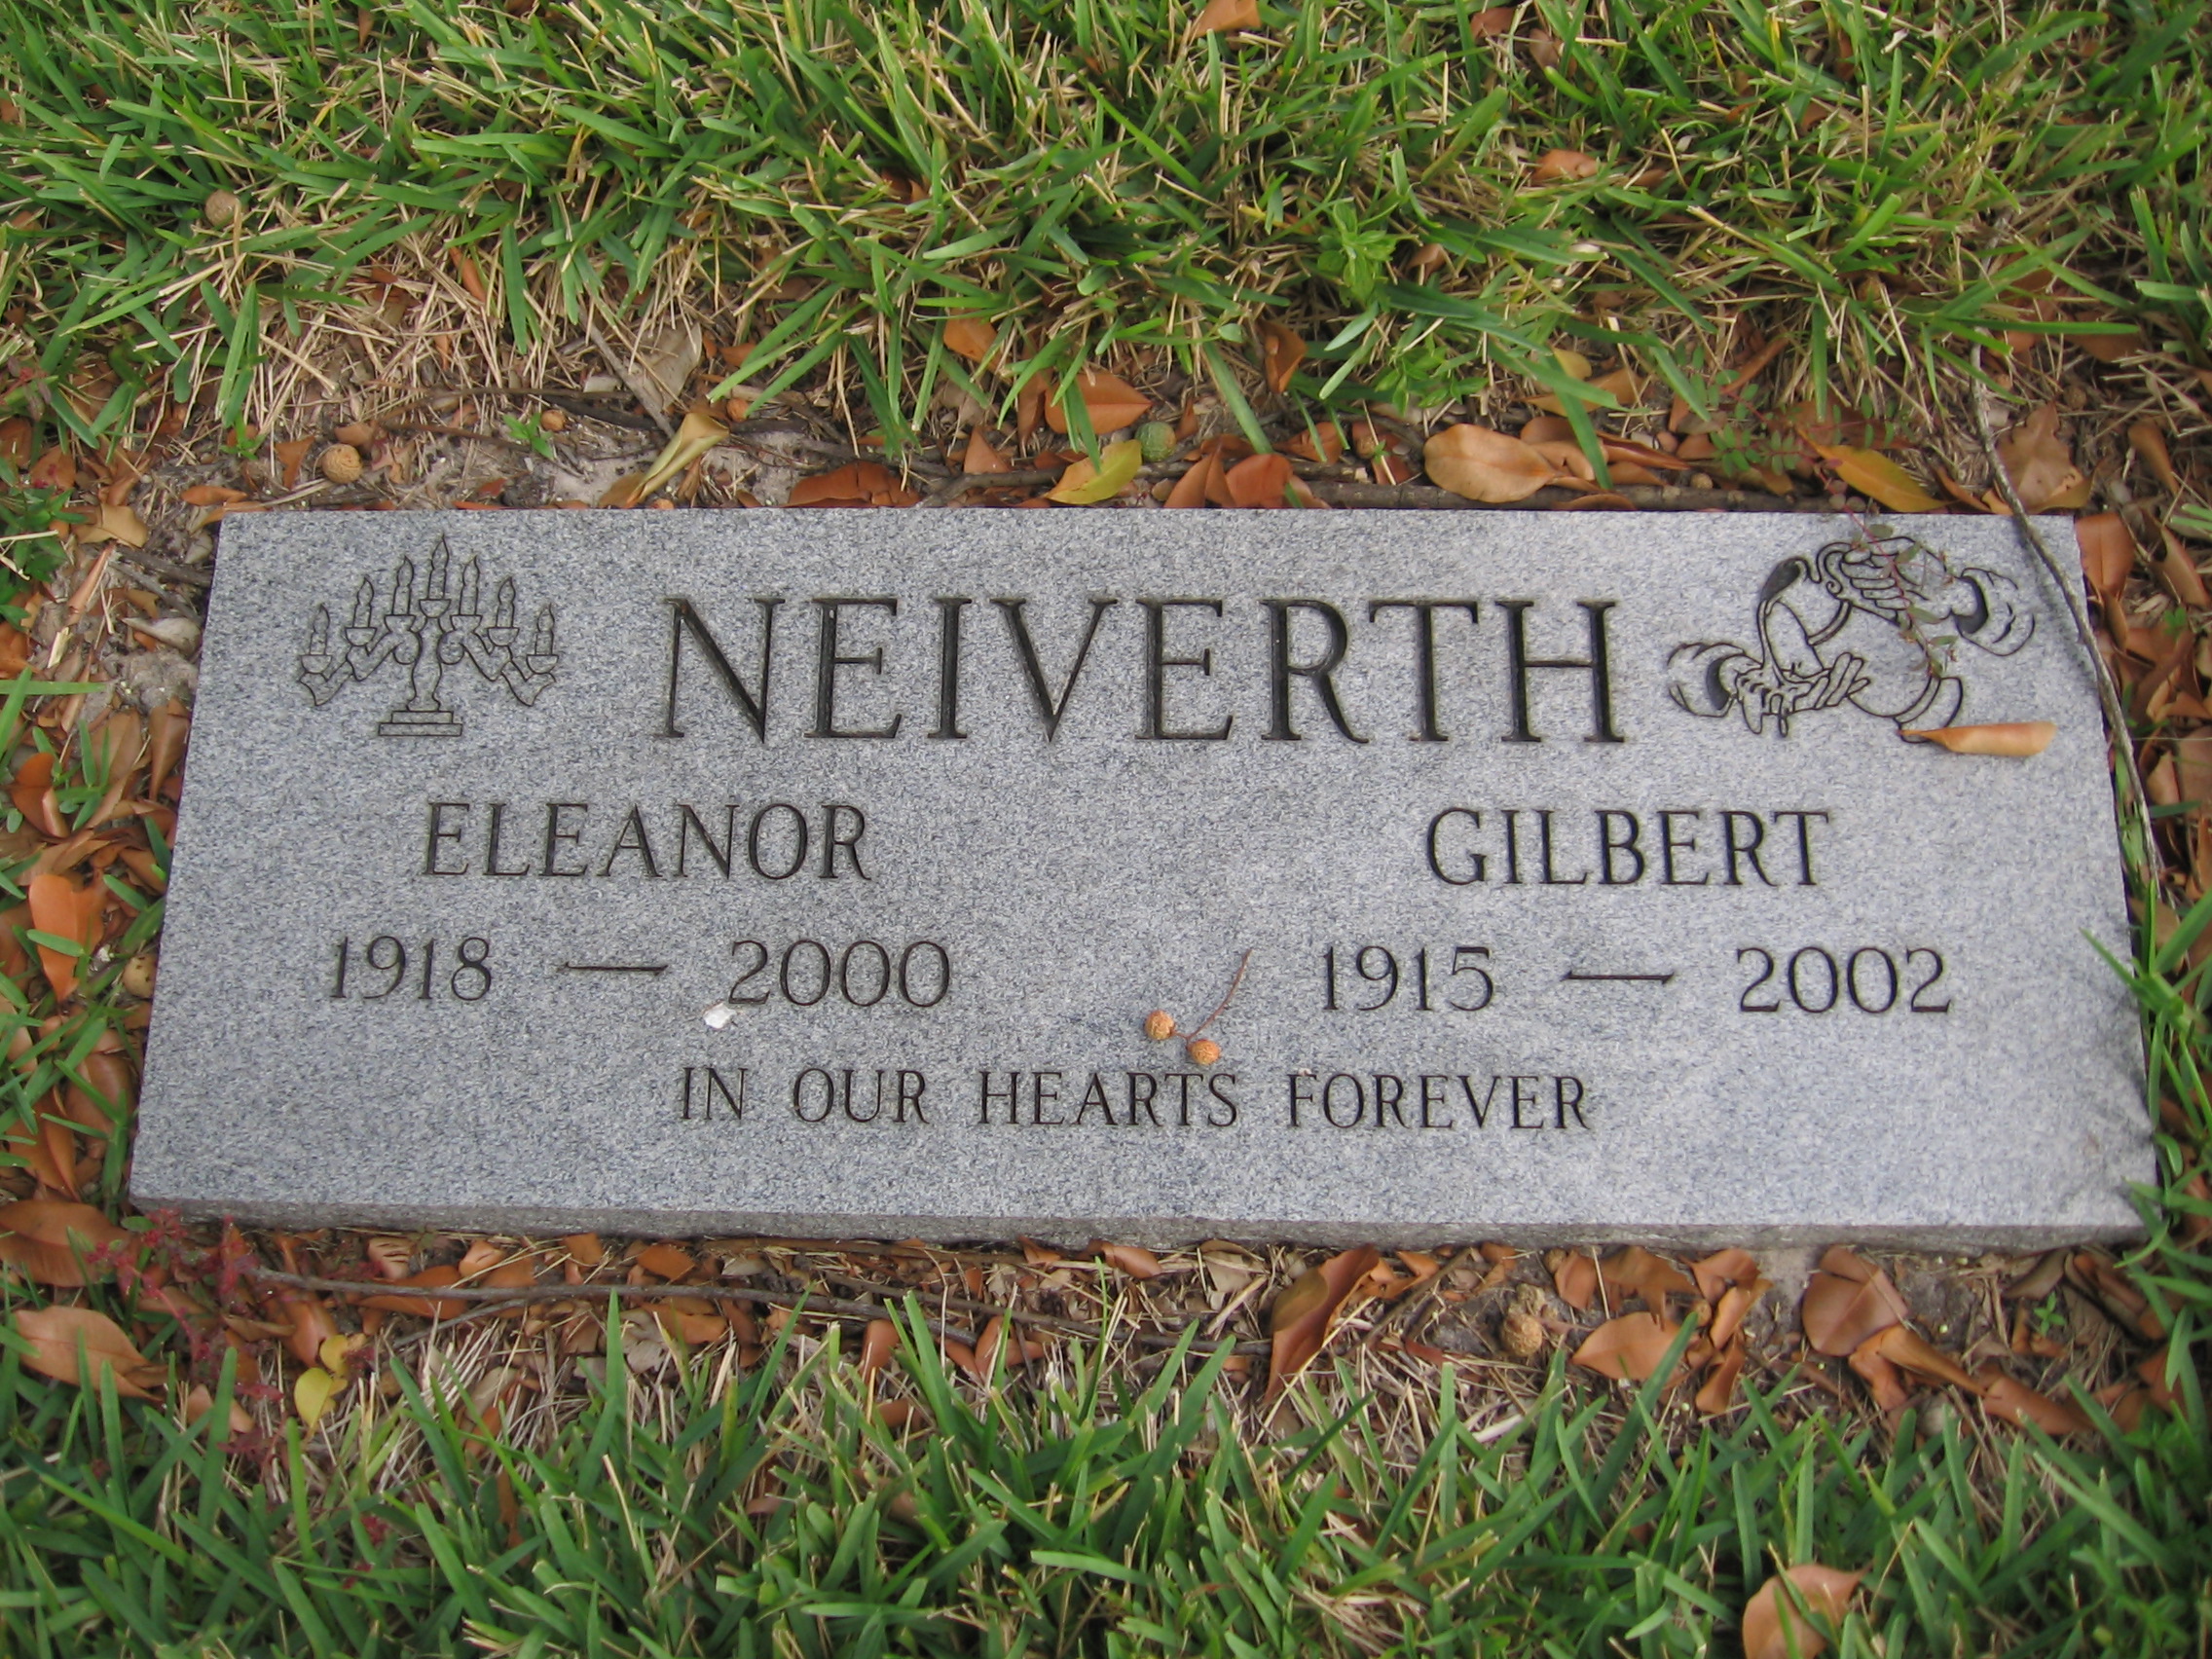 Gilbert Neiverth